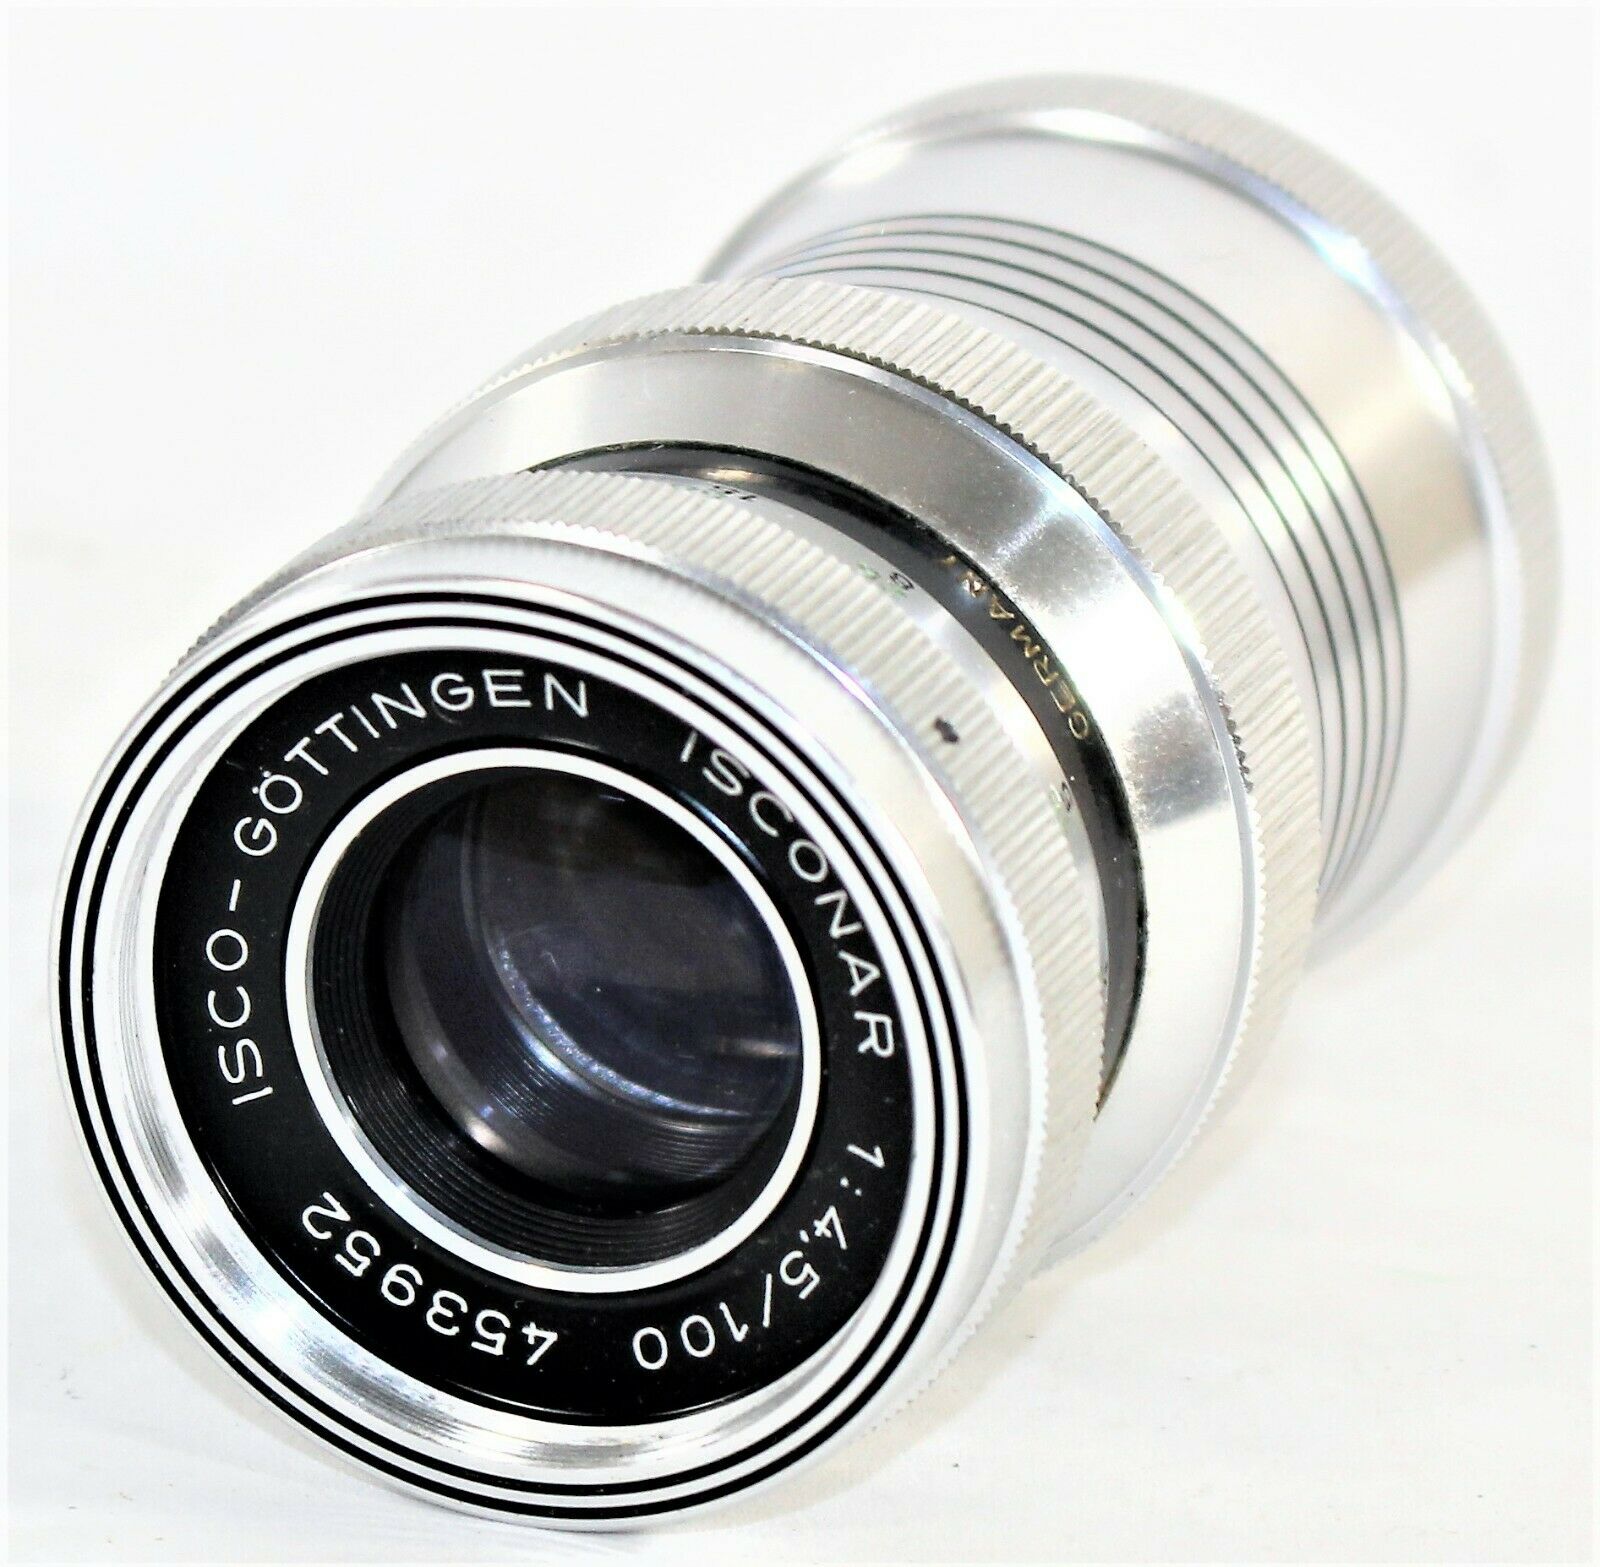 Isco-gottingen Isconar F 1:4.5/100 Exacta Exa Mount Lens Vintage